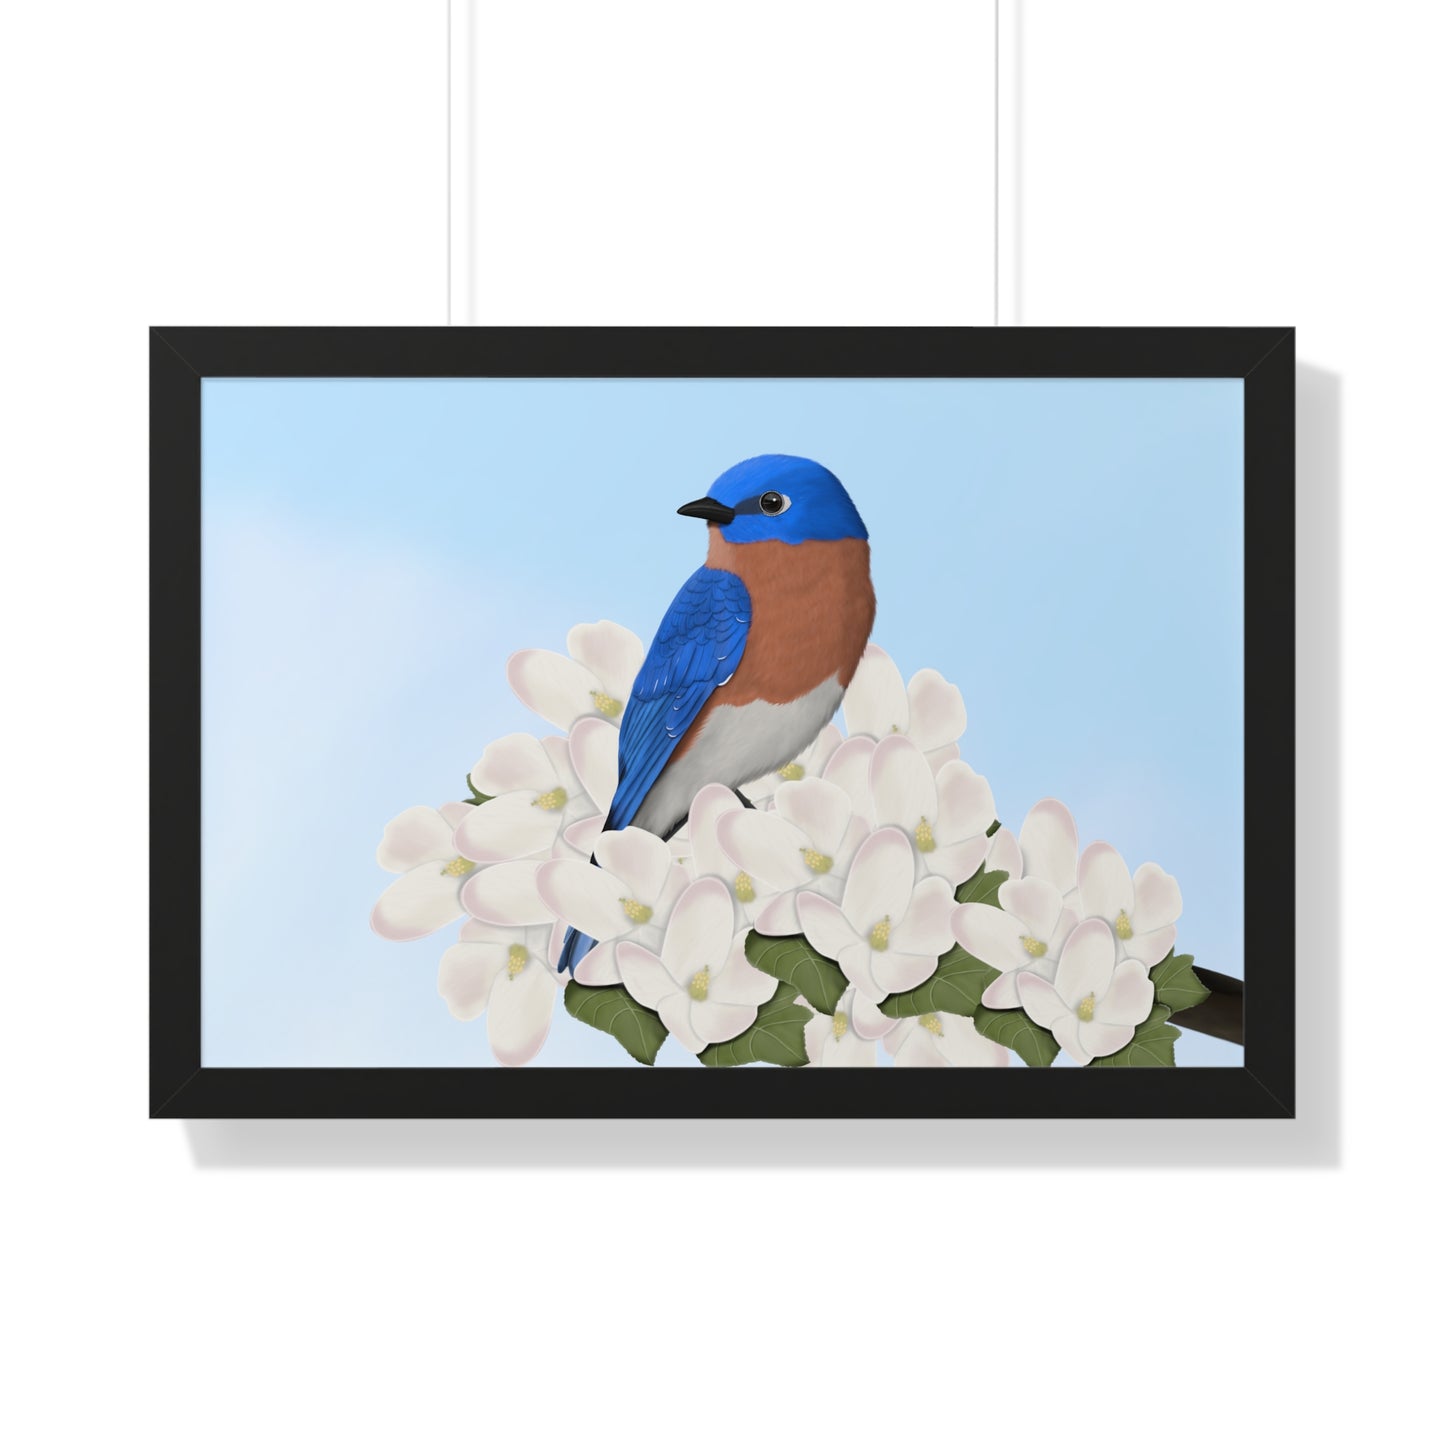 bluebird bird art framed poster